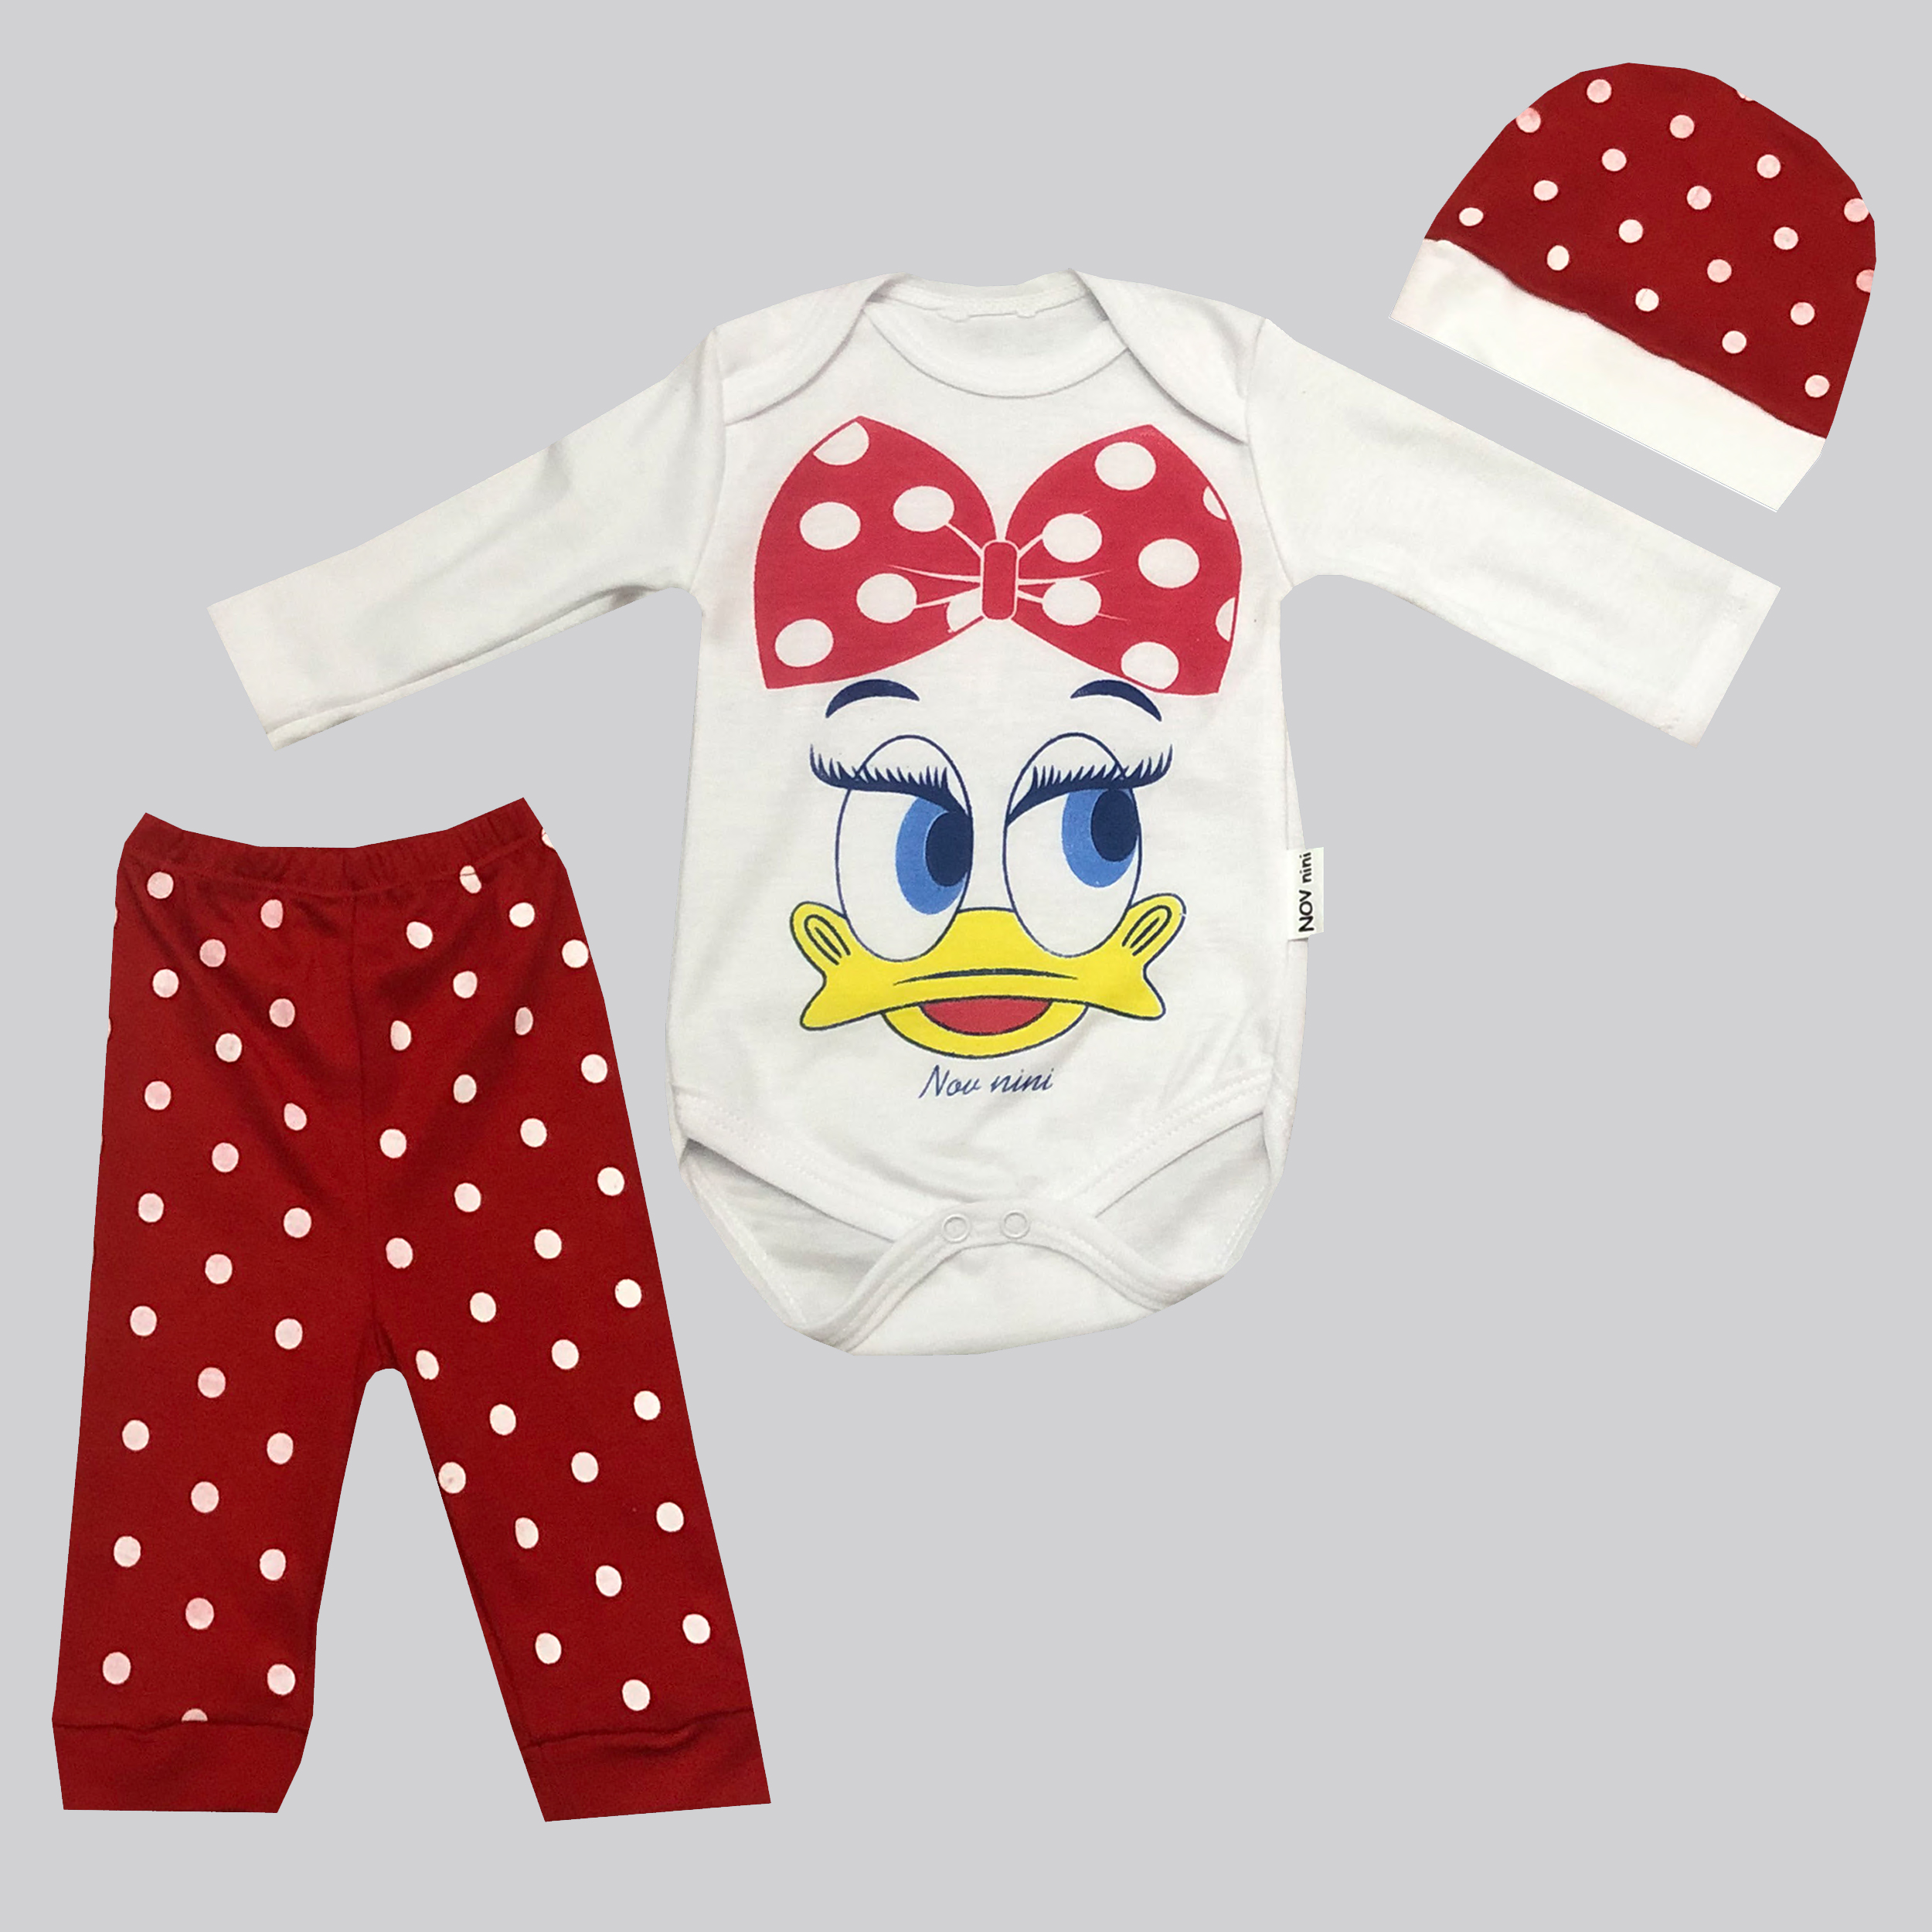 نقد و بررسی ست 3 تکه لباس نوزادی نوونینی مدل اردک رنگ قرمز توسط خریداران